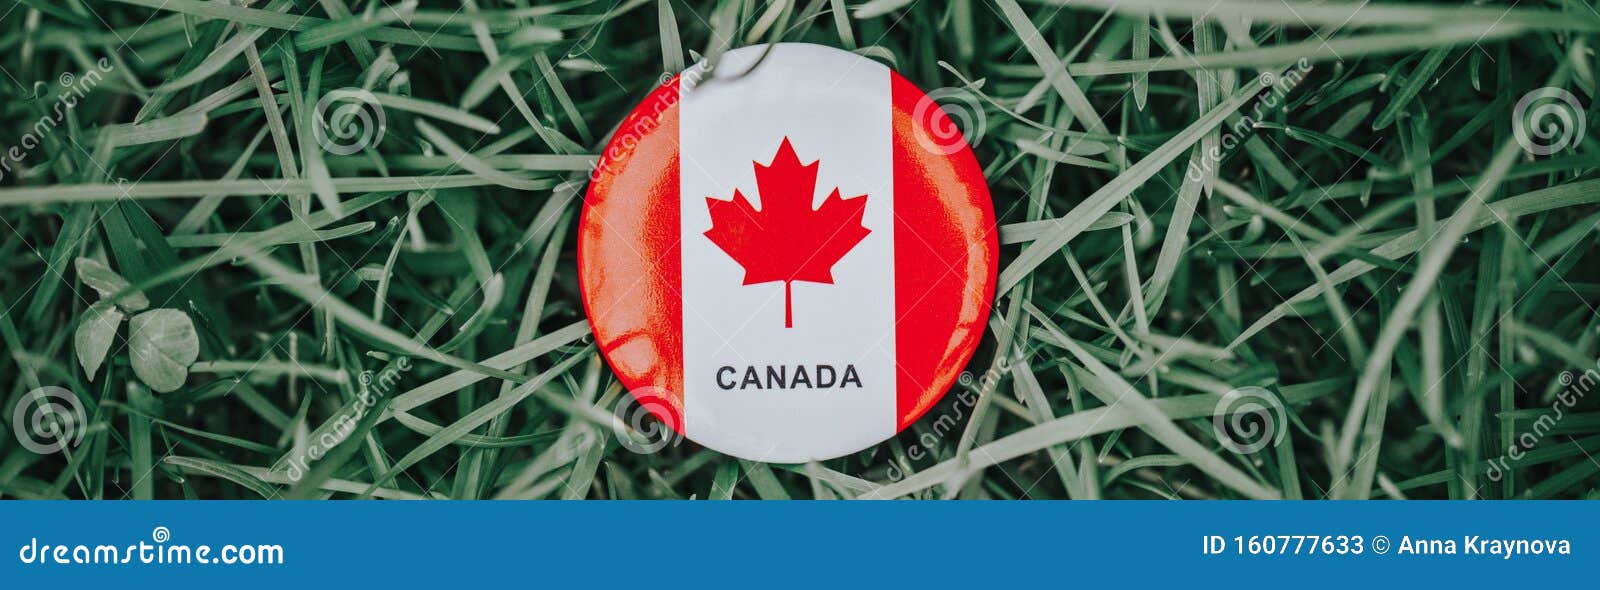 Rundcirkelbricka med rött vitt kanadensiskt flaggblad som ligger i gräs på grön skogsbakgrund Sidhuvud för webbanderoll. Rundcirkelbricka med rött vitt kanadensiskt flaggblad som ligger i gräs på grön skogsbakgrund Webbsidans sidhuvud för webbplatsen Nationellt firande av Kanadas semesterdag